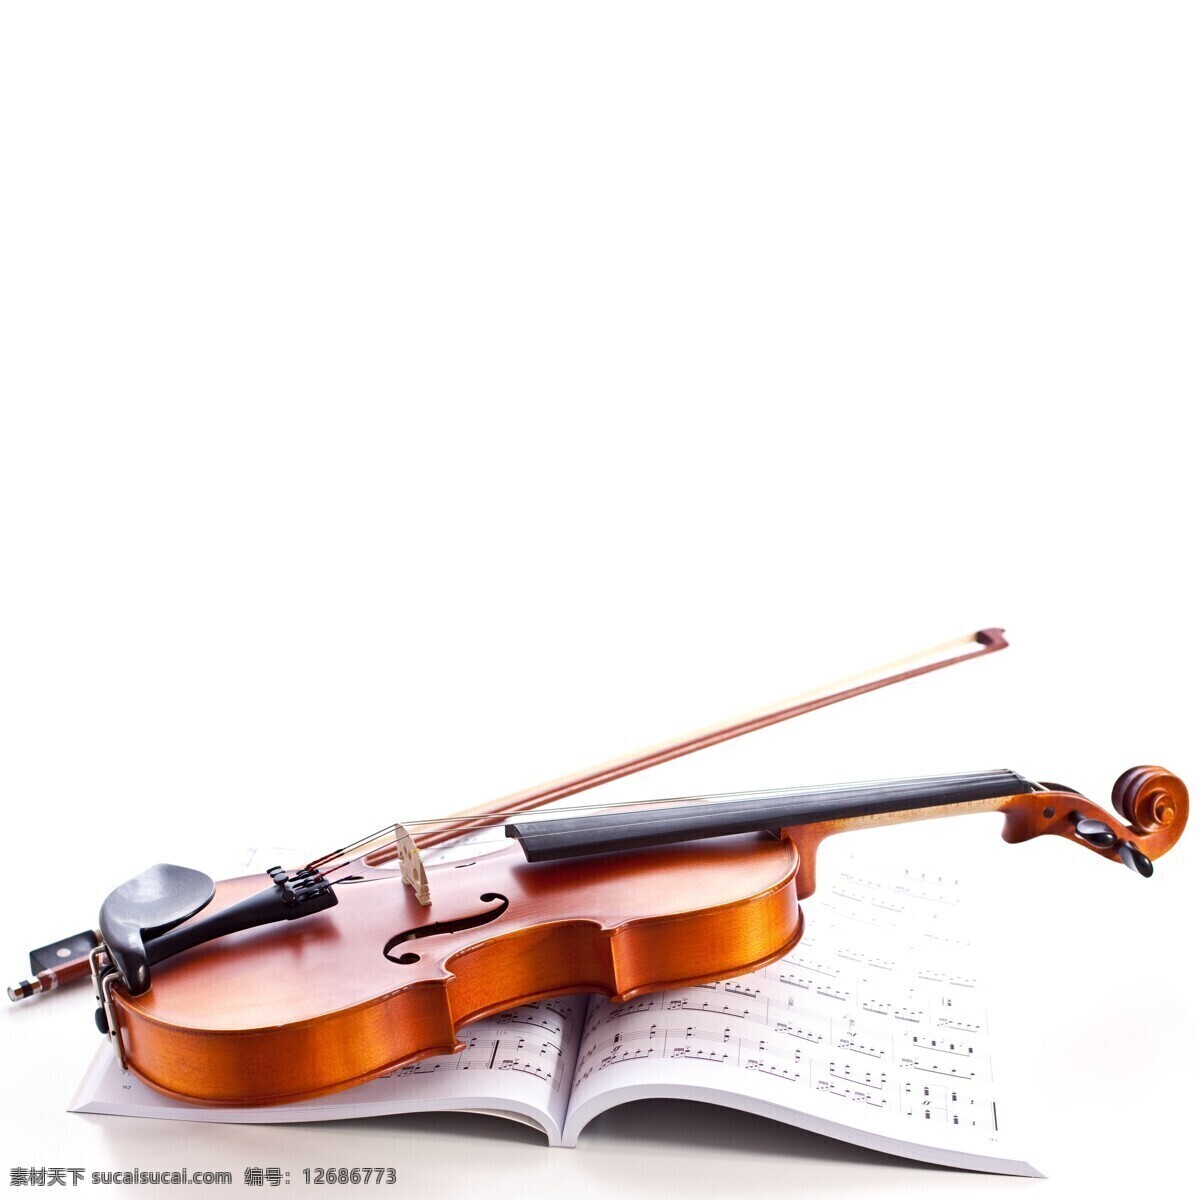 小提琴 乐器 琴 提琴 西洋音乐 优美 舞蹈音乐 文化艺术